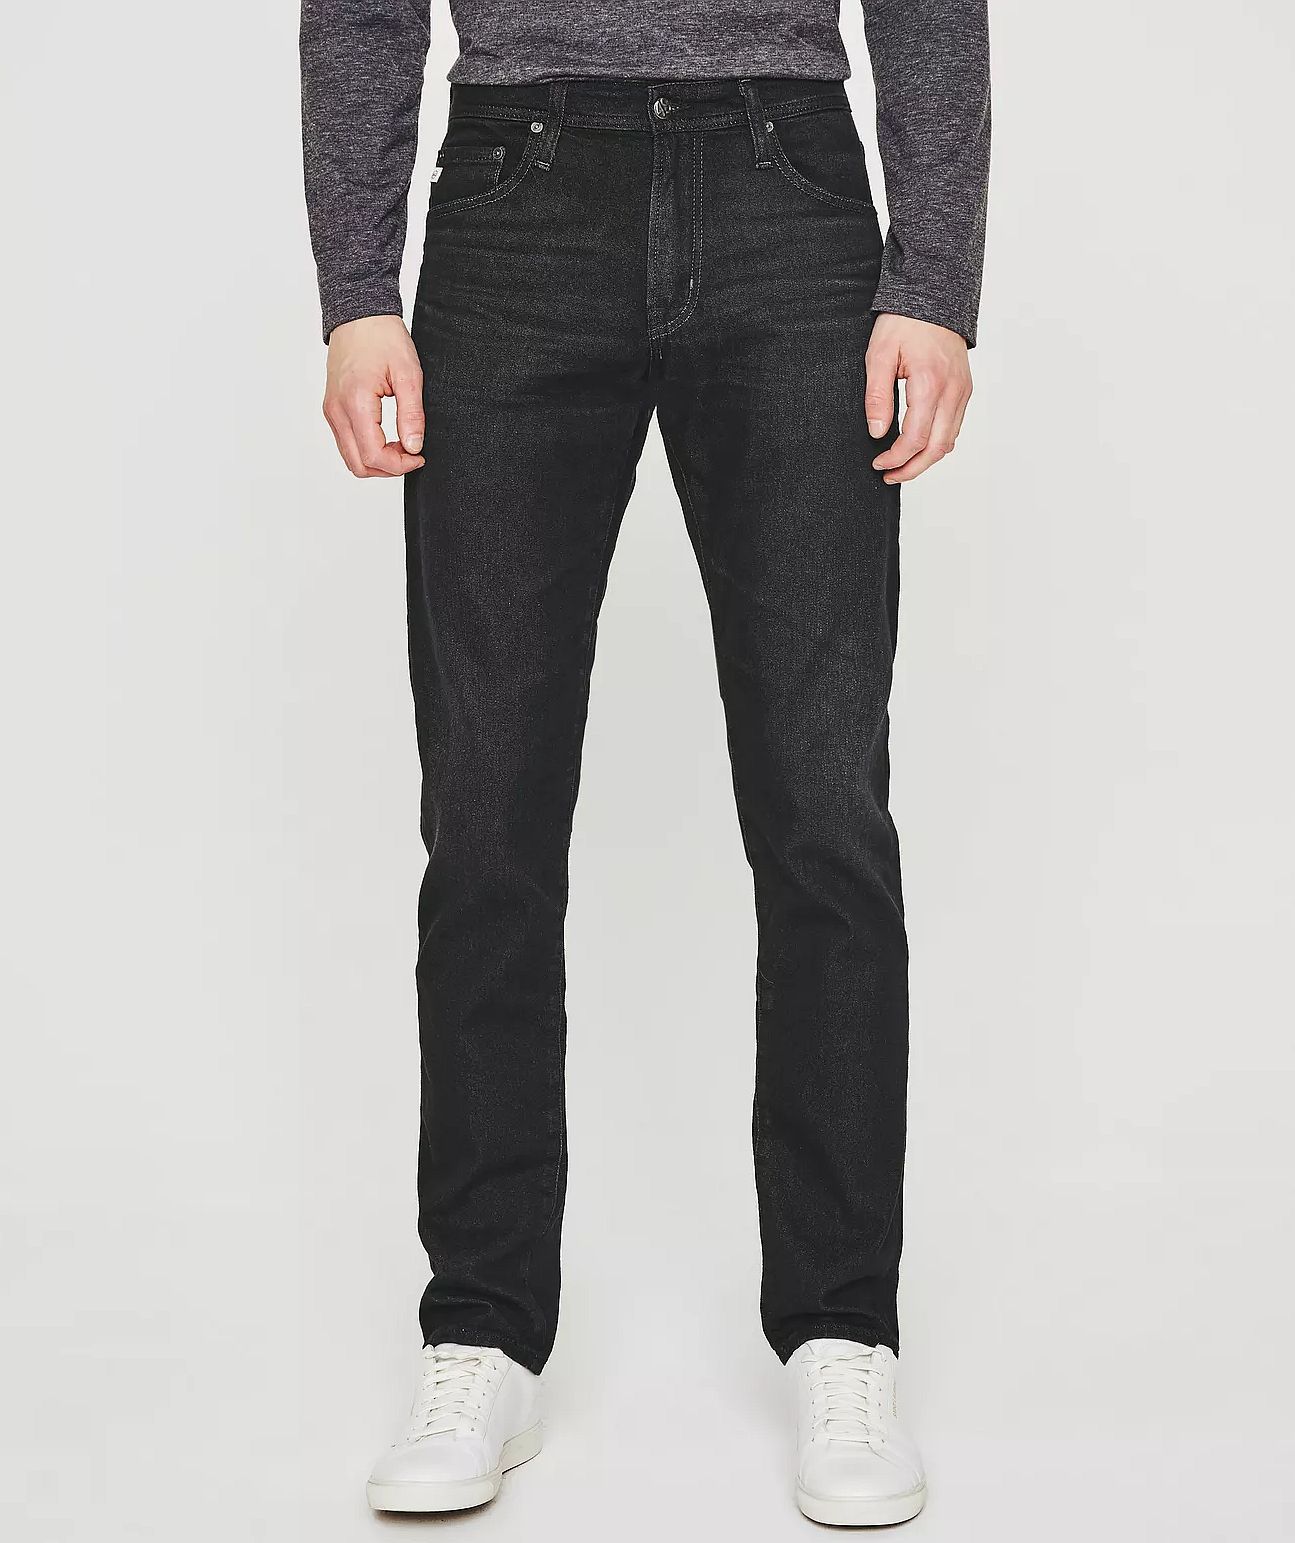 Men’s Denim Trend – Relaxed Tapered Jeans - Denimology